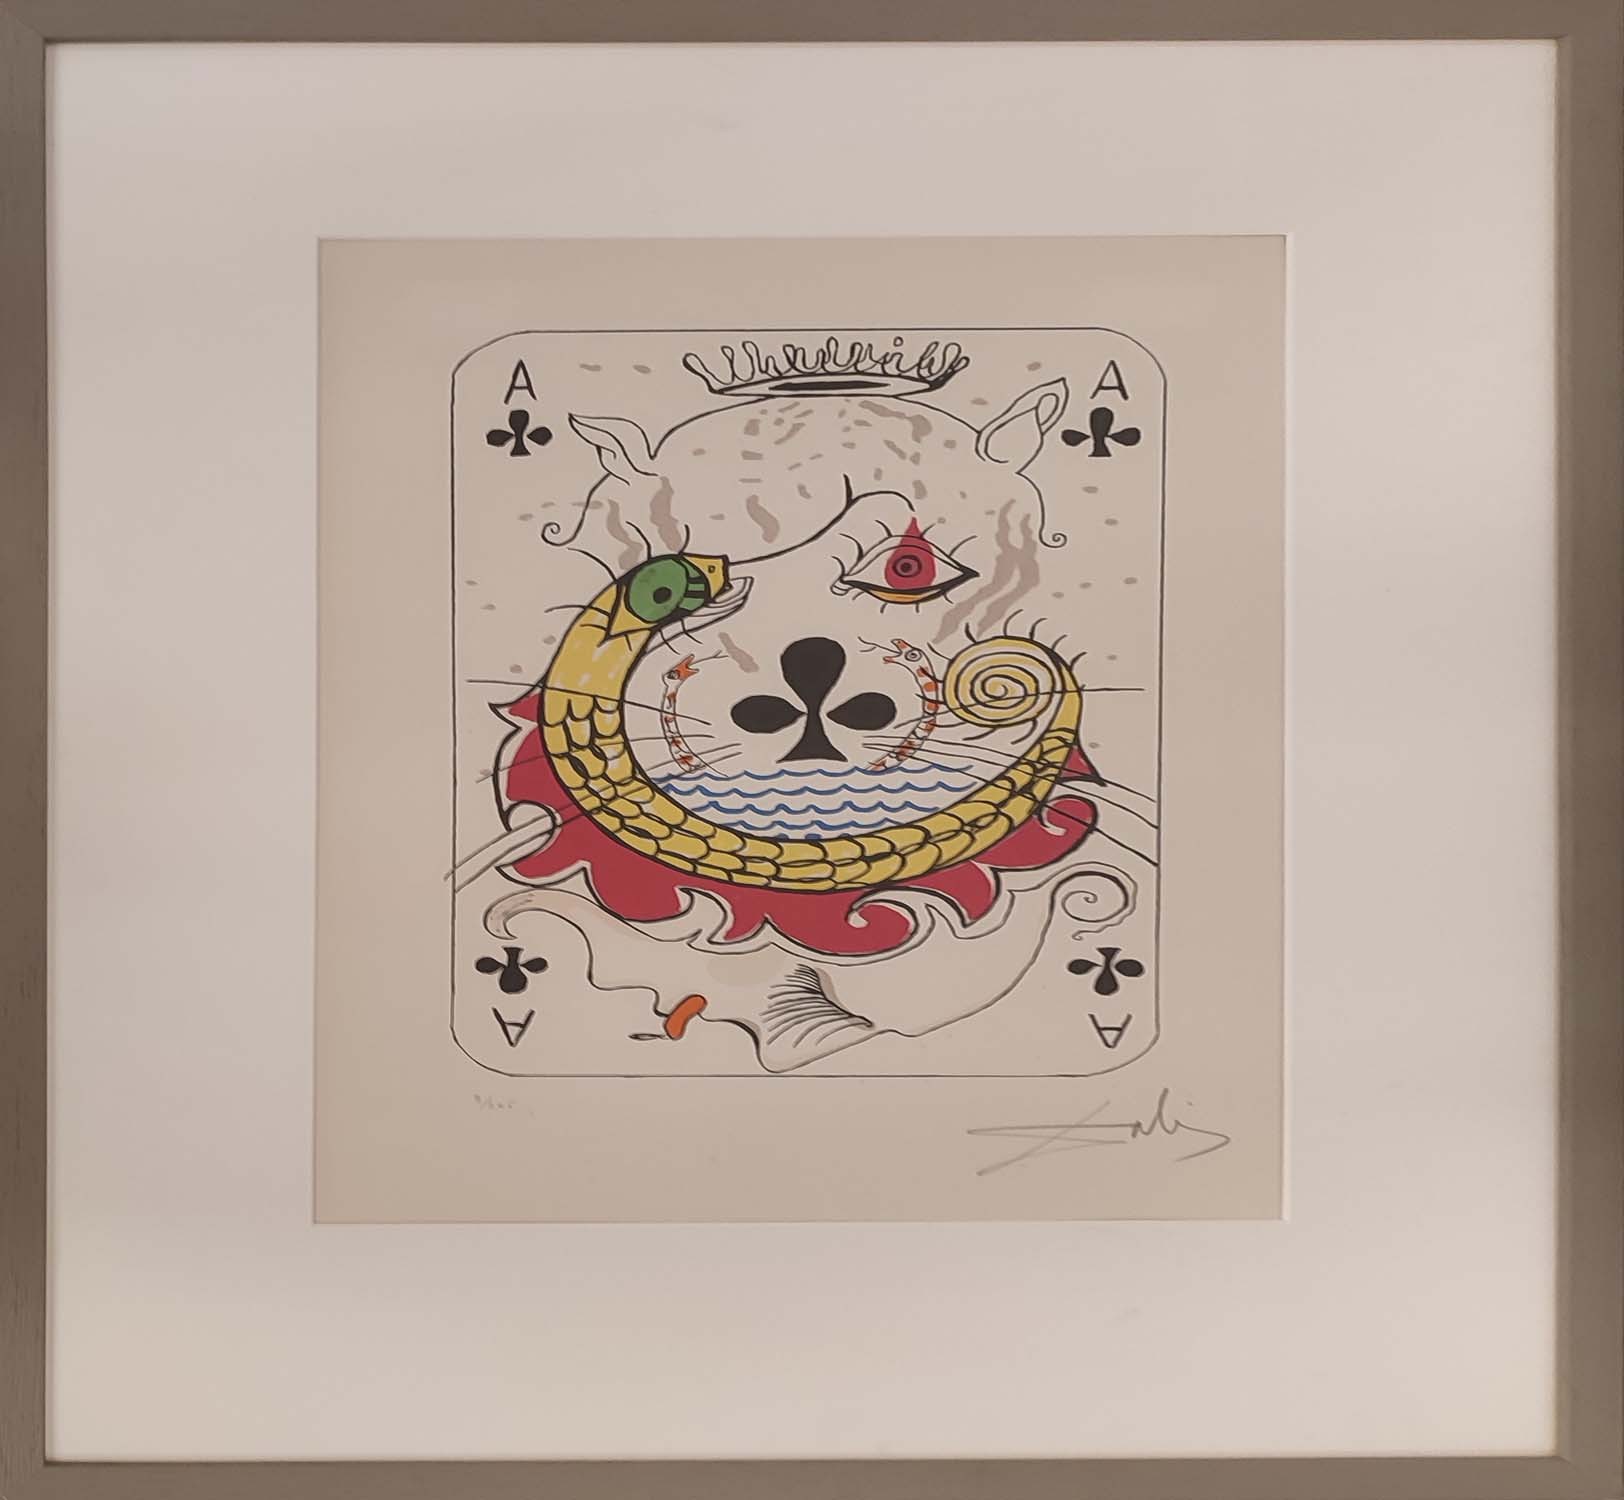 SALVADOR DALI, Amour et La Chance, lithograph on arches paper, 47cm x 32cm, signed, artists proof